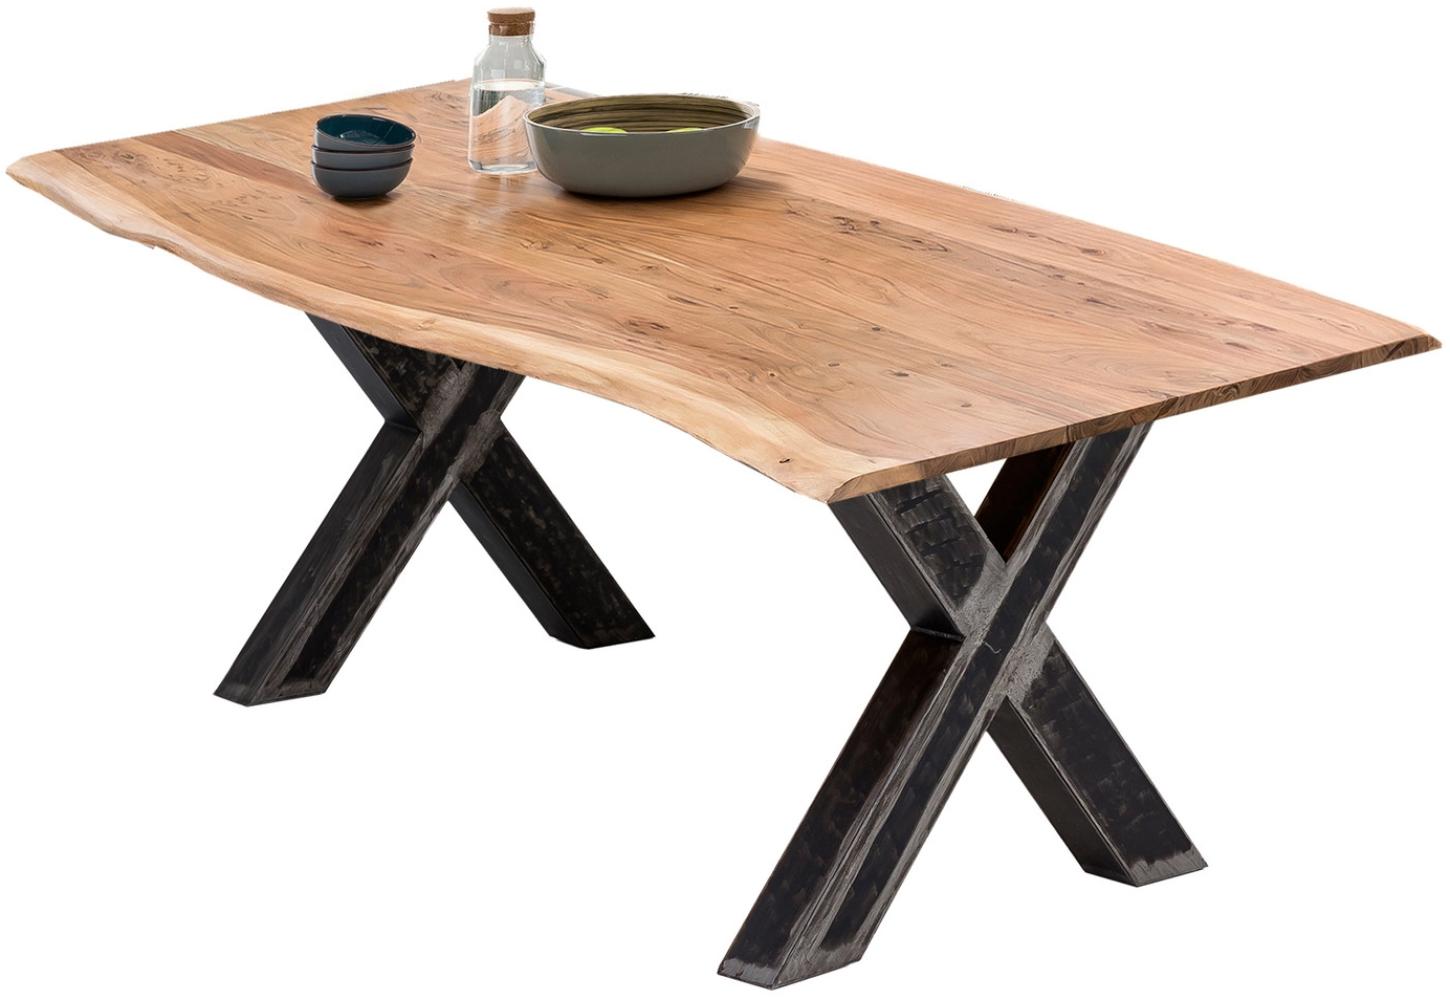 Sit Möbel Tische & Bänke Tisch 220x100 cm, Platte natur, X-Gestell Metall used look, klar lackiert Bild 1